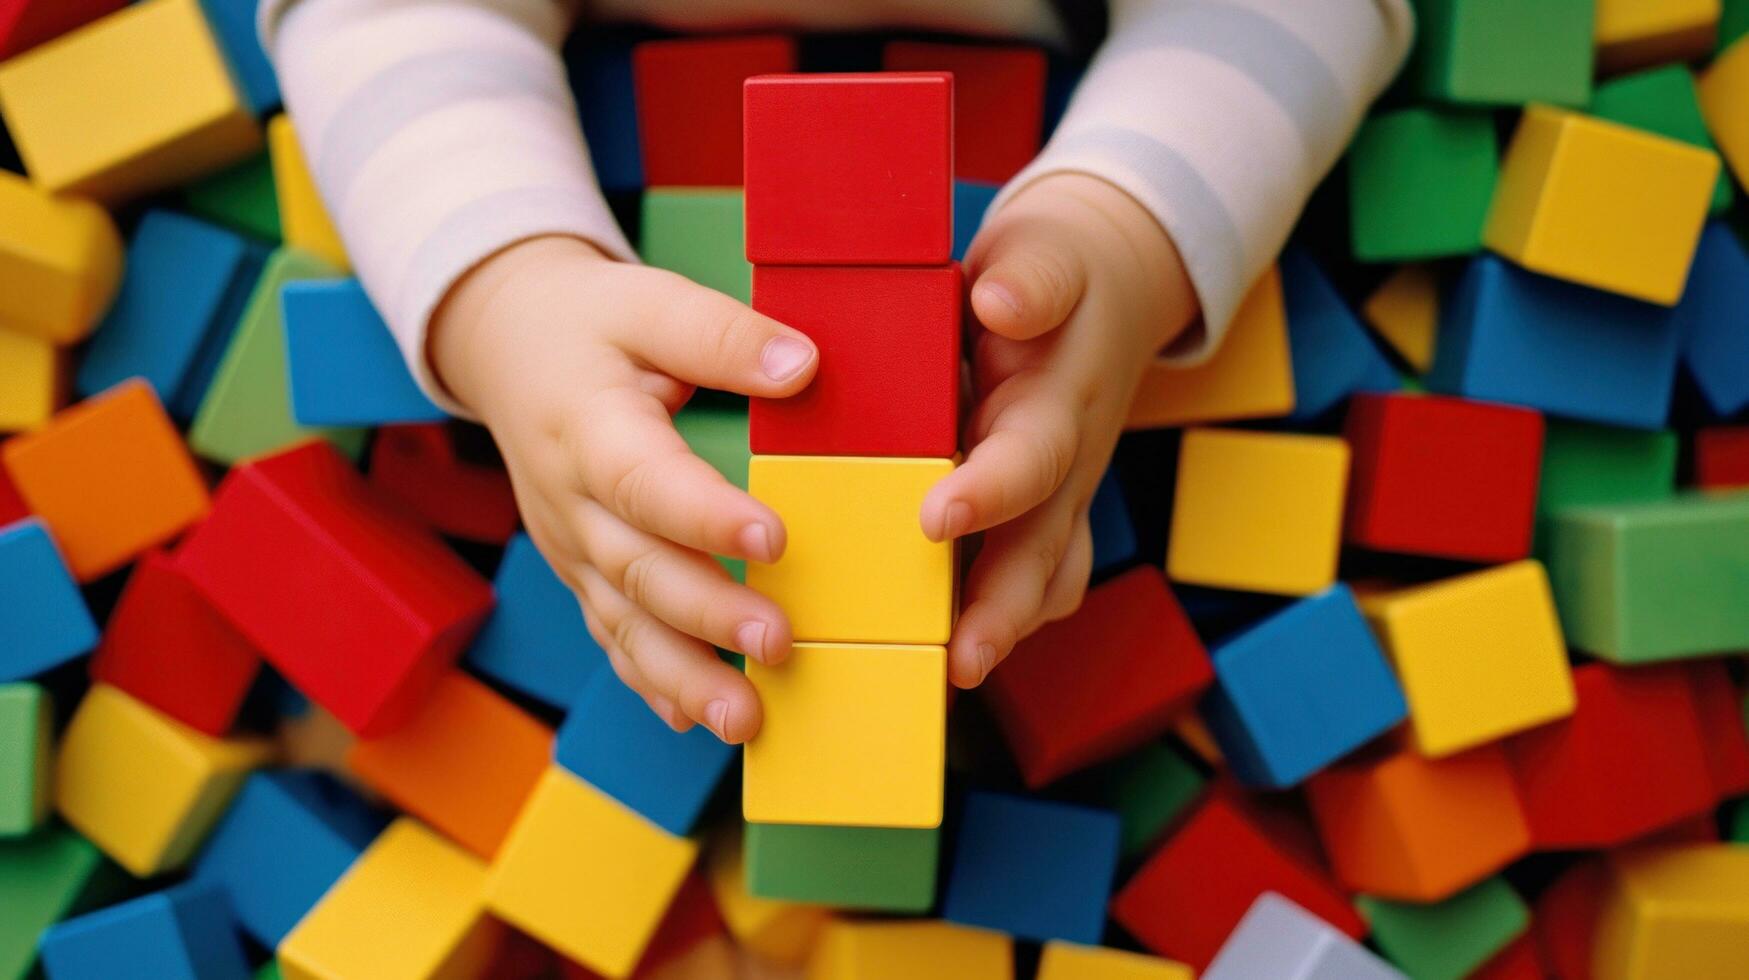 en ung barnets händer spelar med av färgrik byggnad block foto